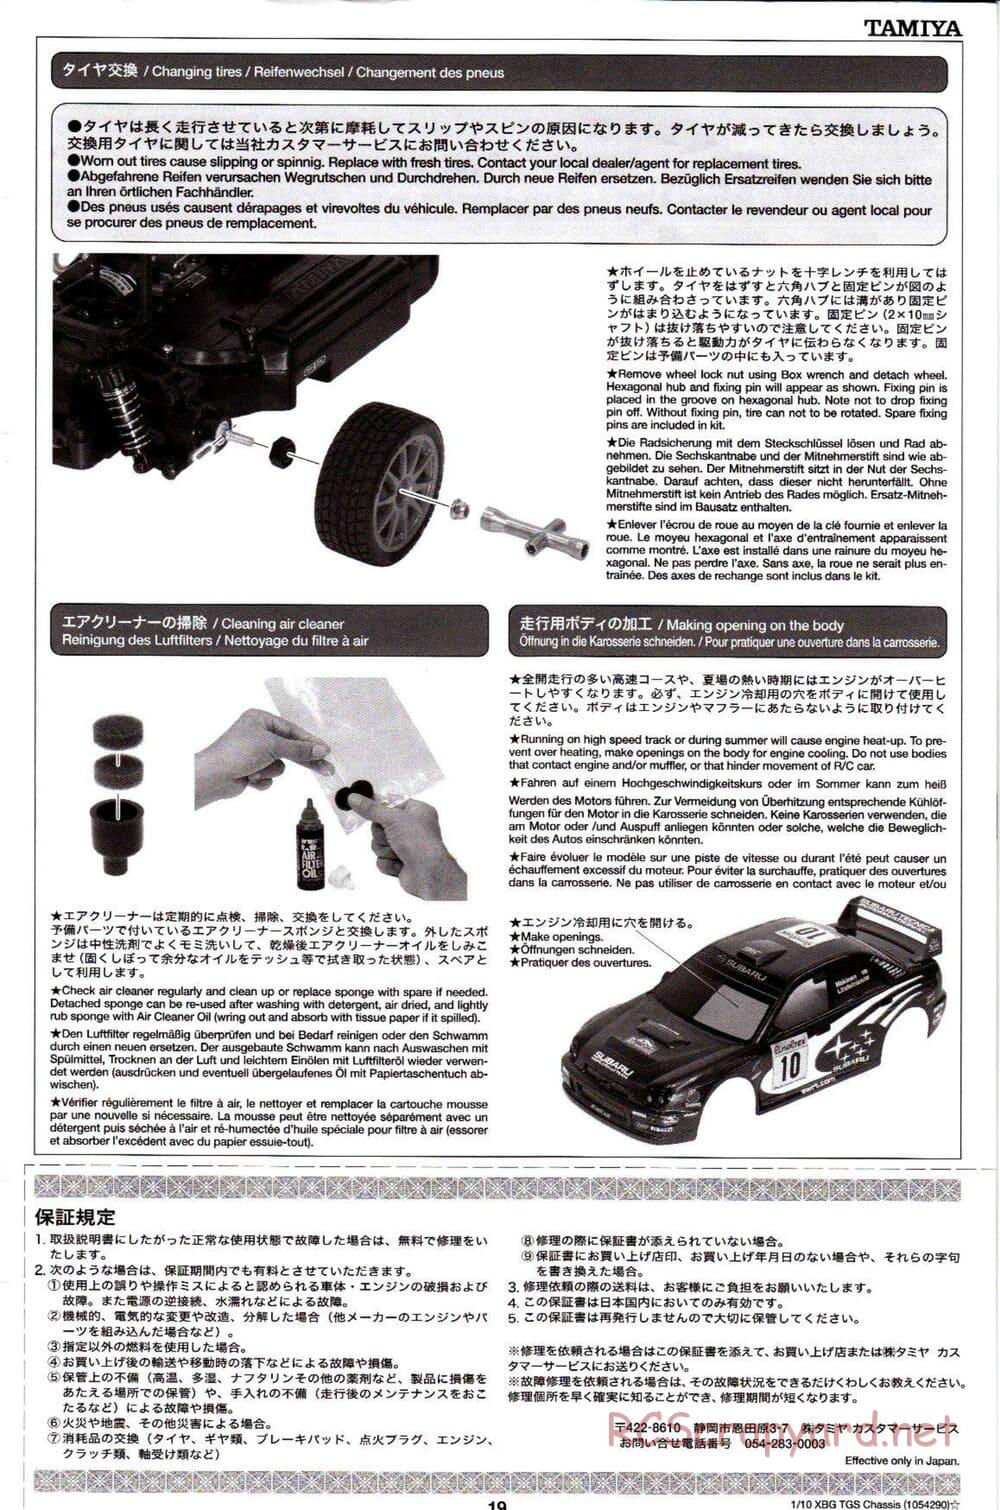 Tamiya - TGS Chassis - Manual - Page 19